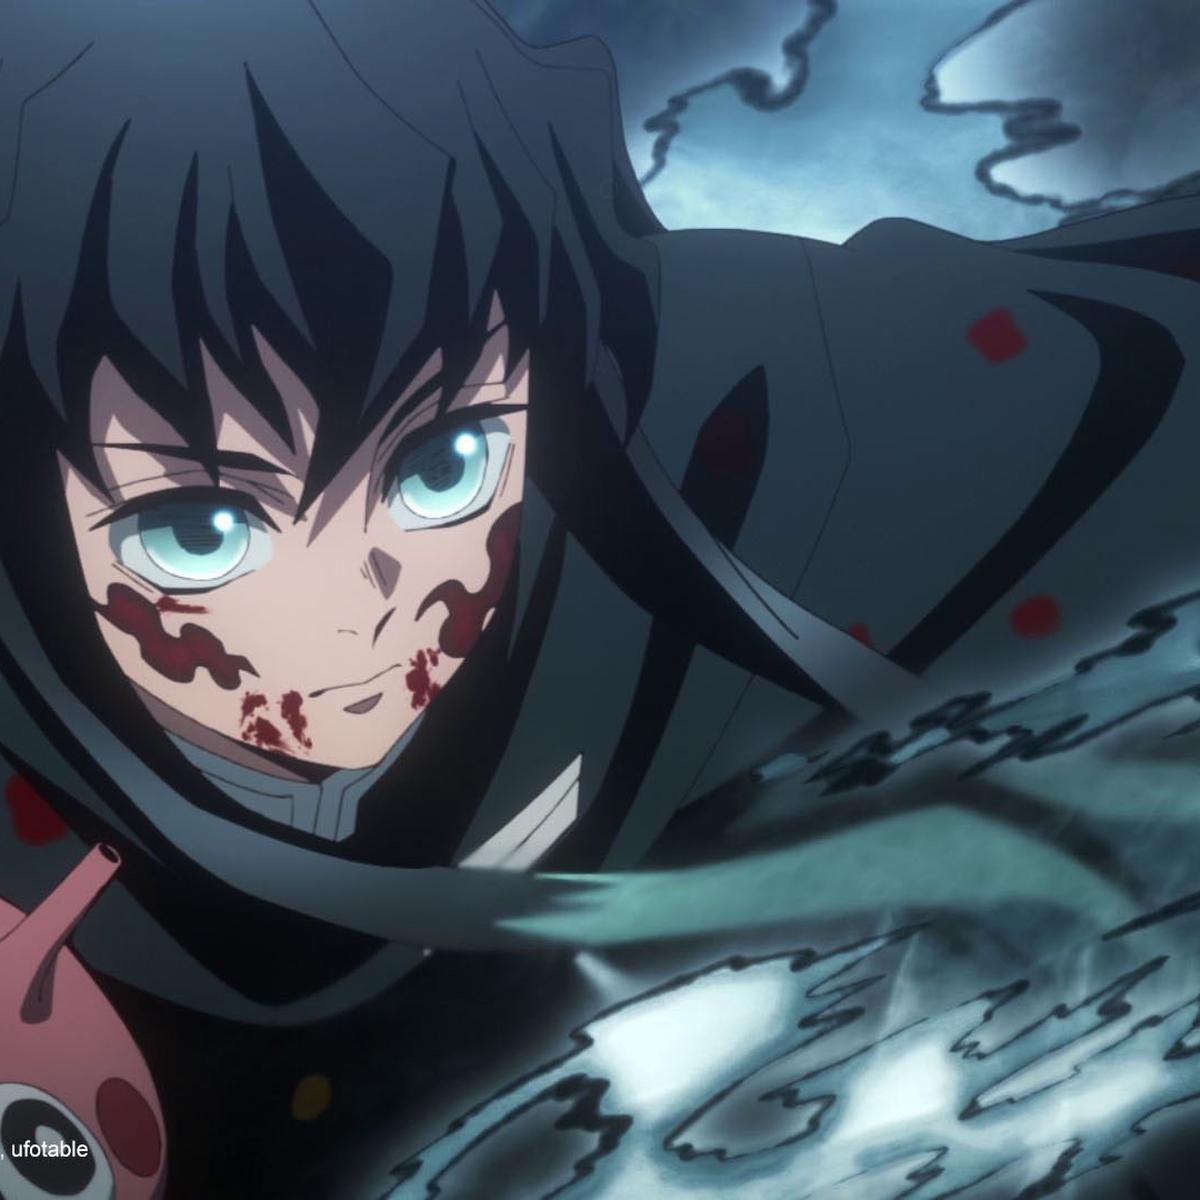 Demon Slayer: Kimetsu no Yaiba”, Temporada 3 - Nuevo opening, Anime, SALTAR-INTRO